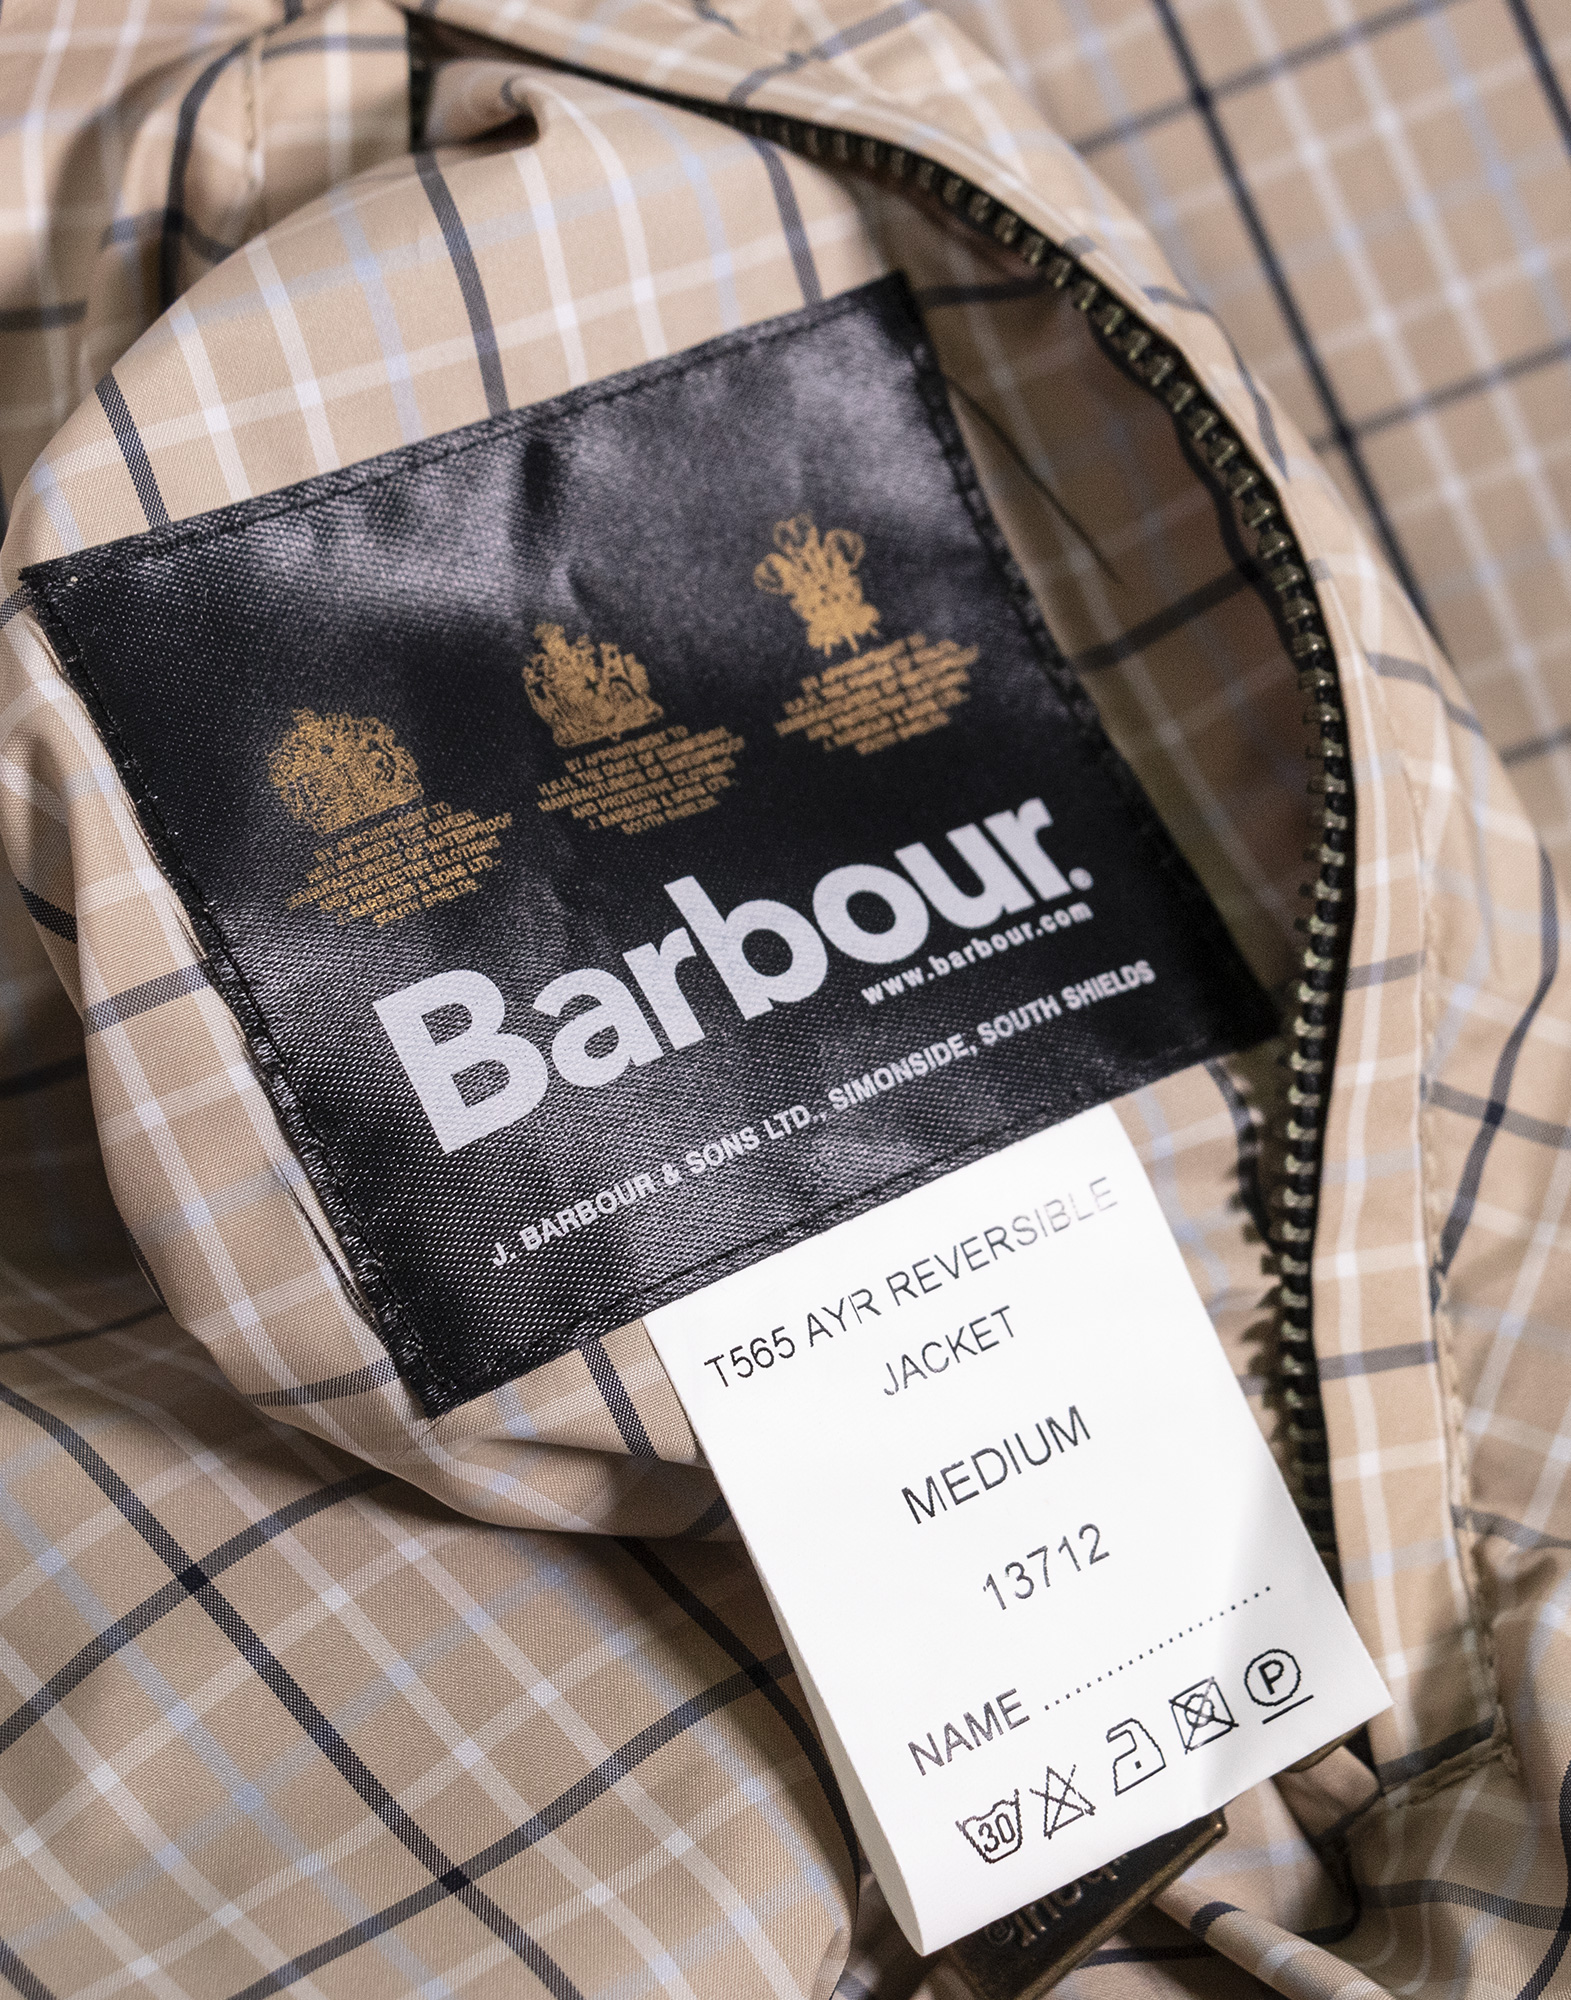 Barbour - Reversible lightweight jacket